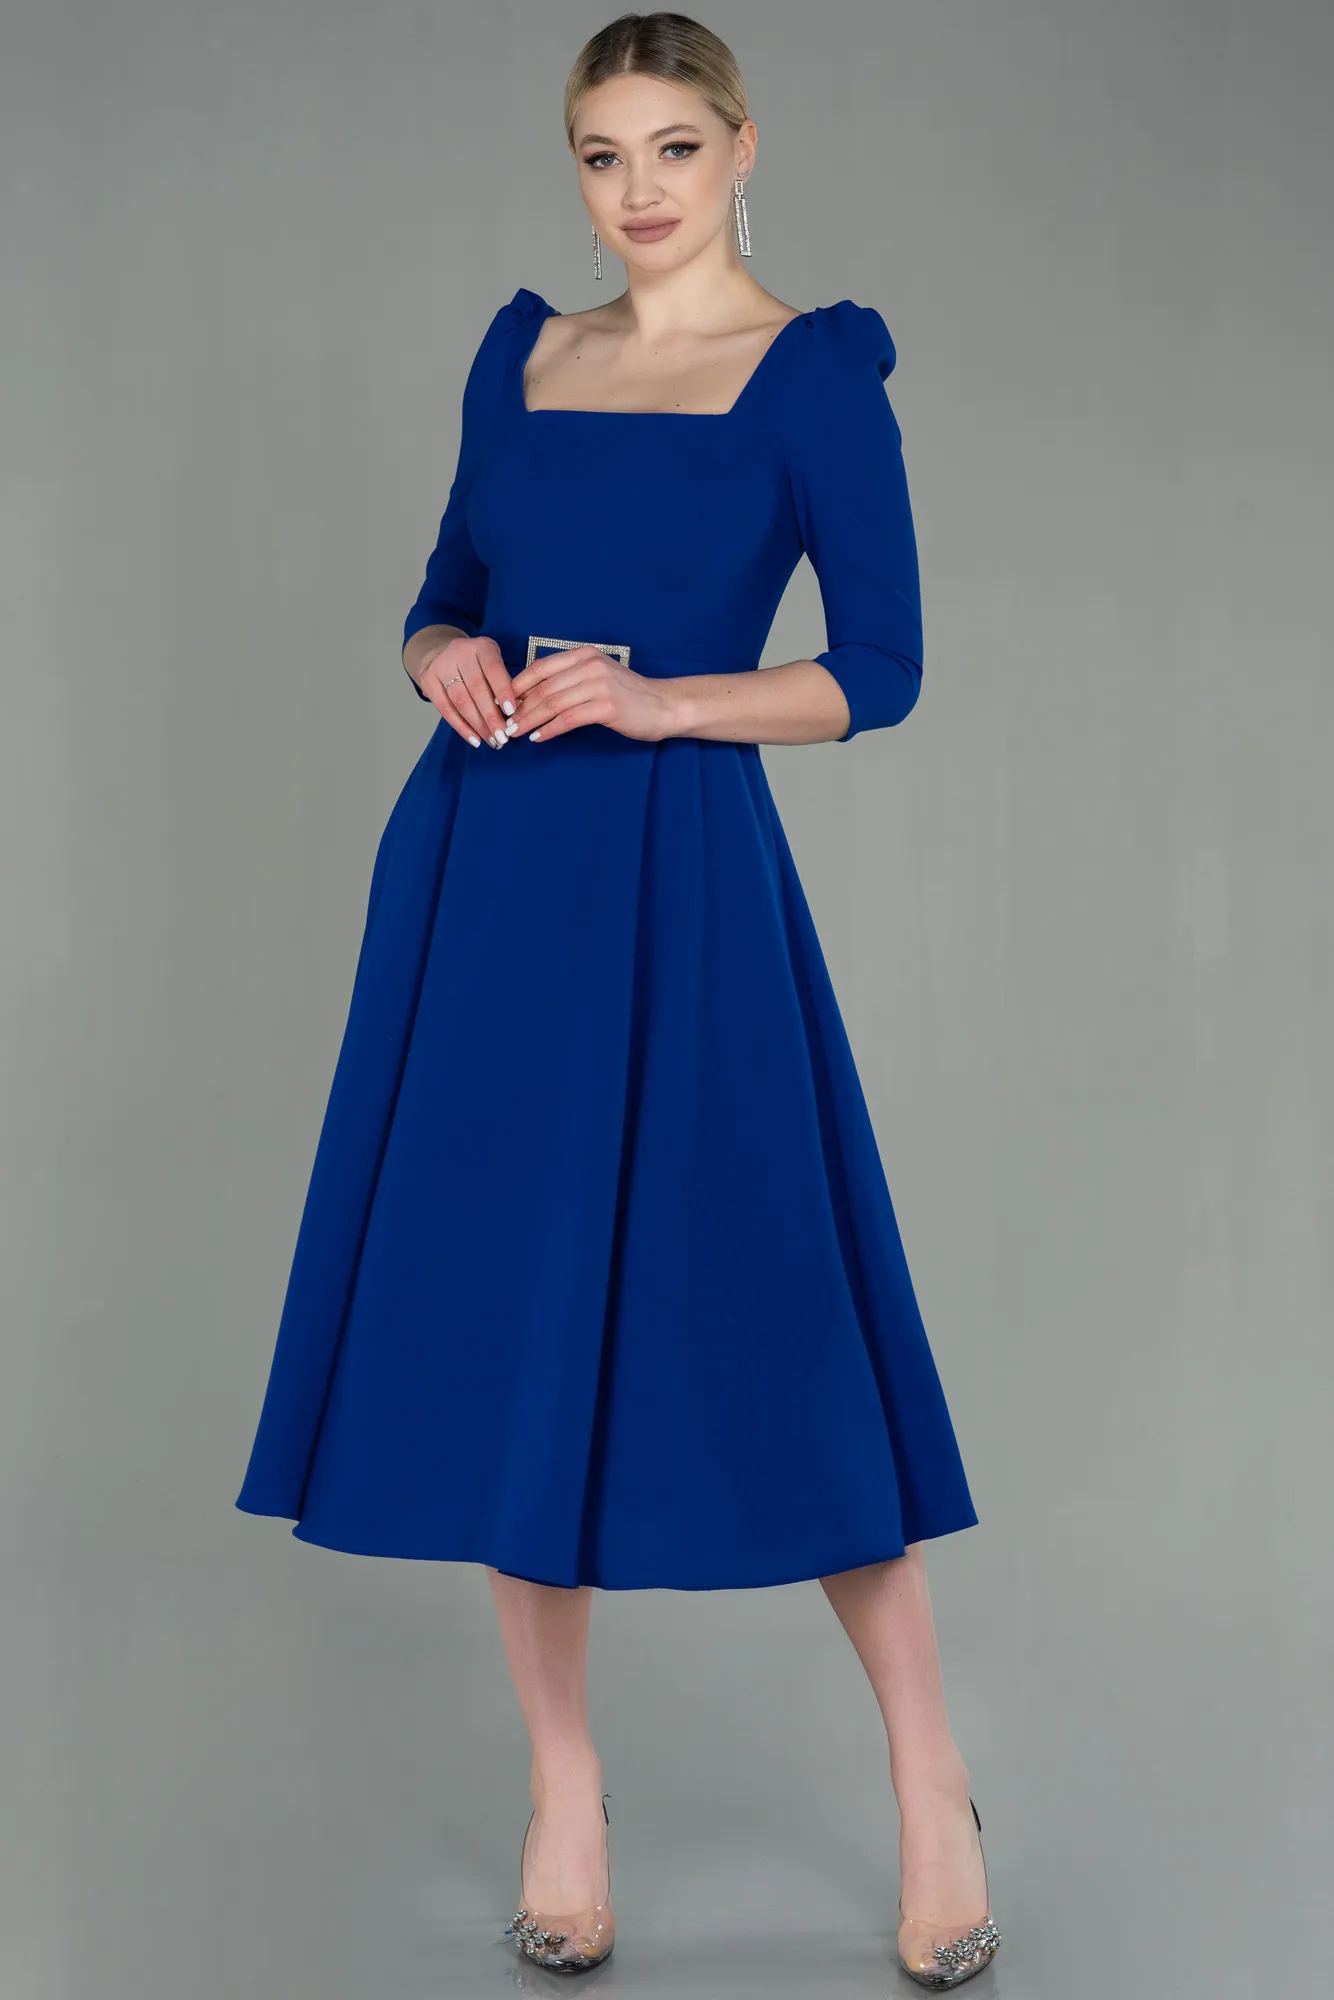 Sax Blue-Midi Invitation Dress ABK1678